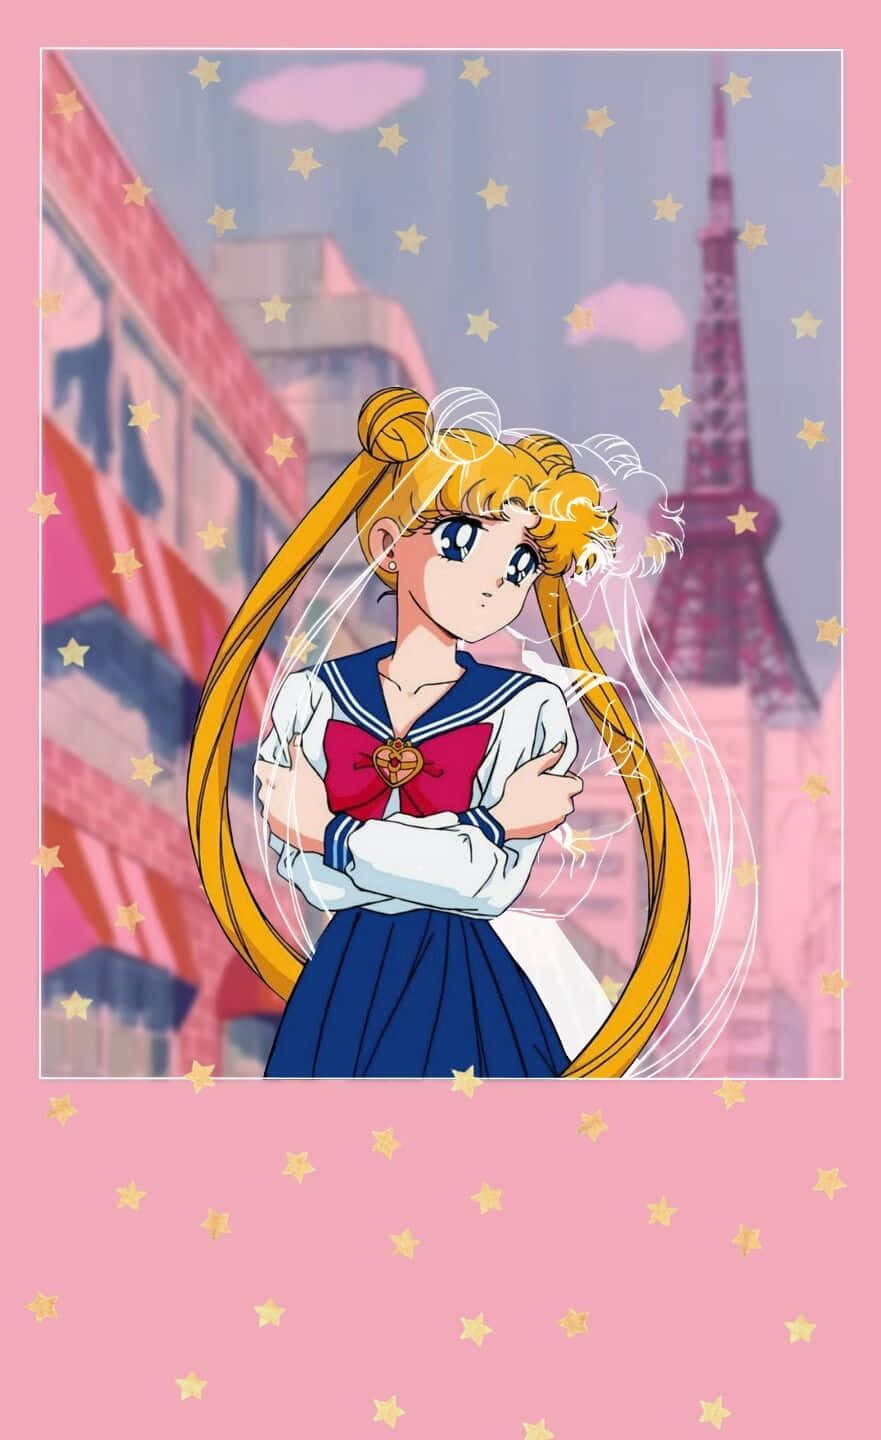 Papelde Parede Da Sailor Moon - Papel De Parede Da Sailor Moon Papel de Parede